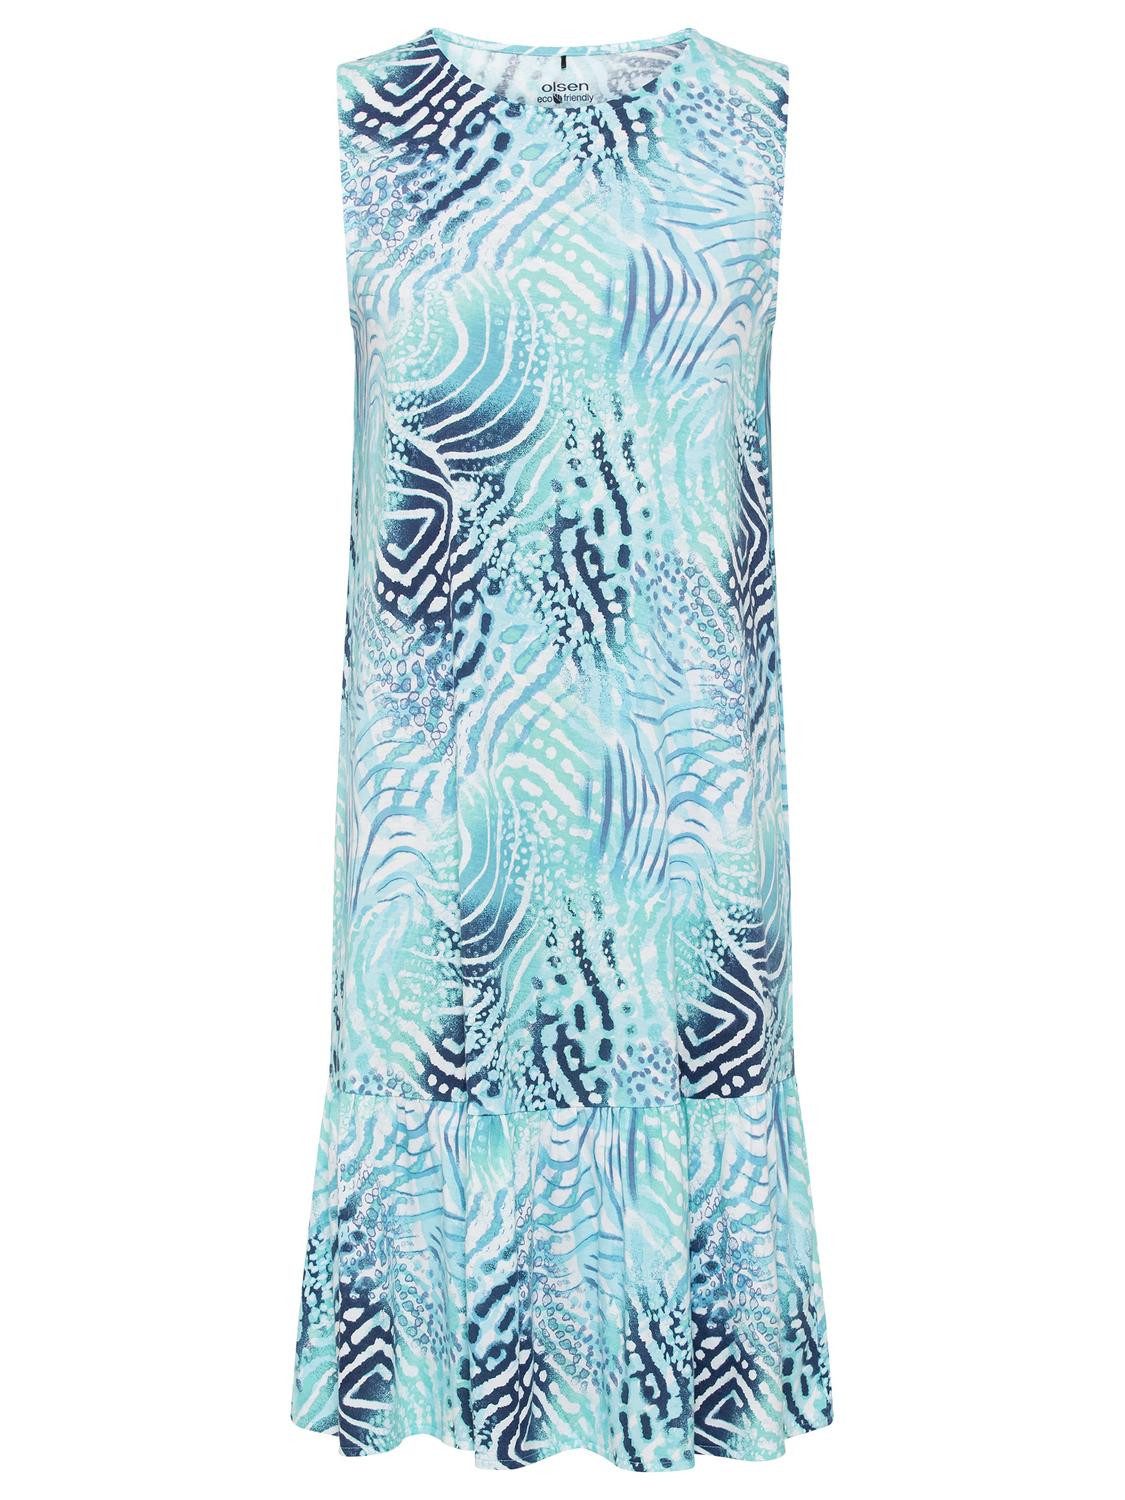 Olsen Sommerkleid Dress Jersey Short (till 105cm)